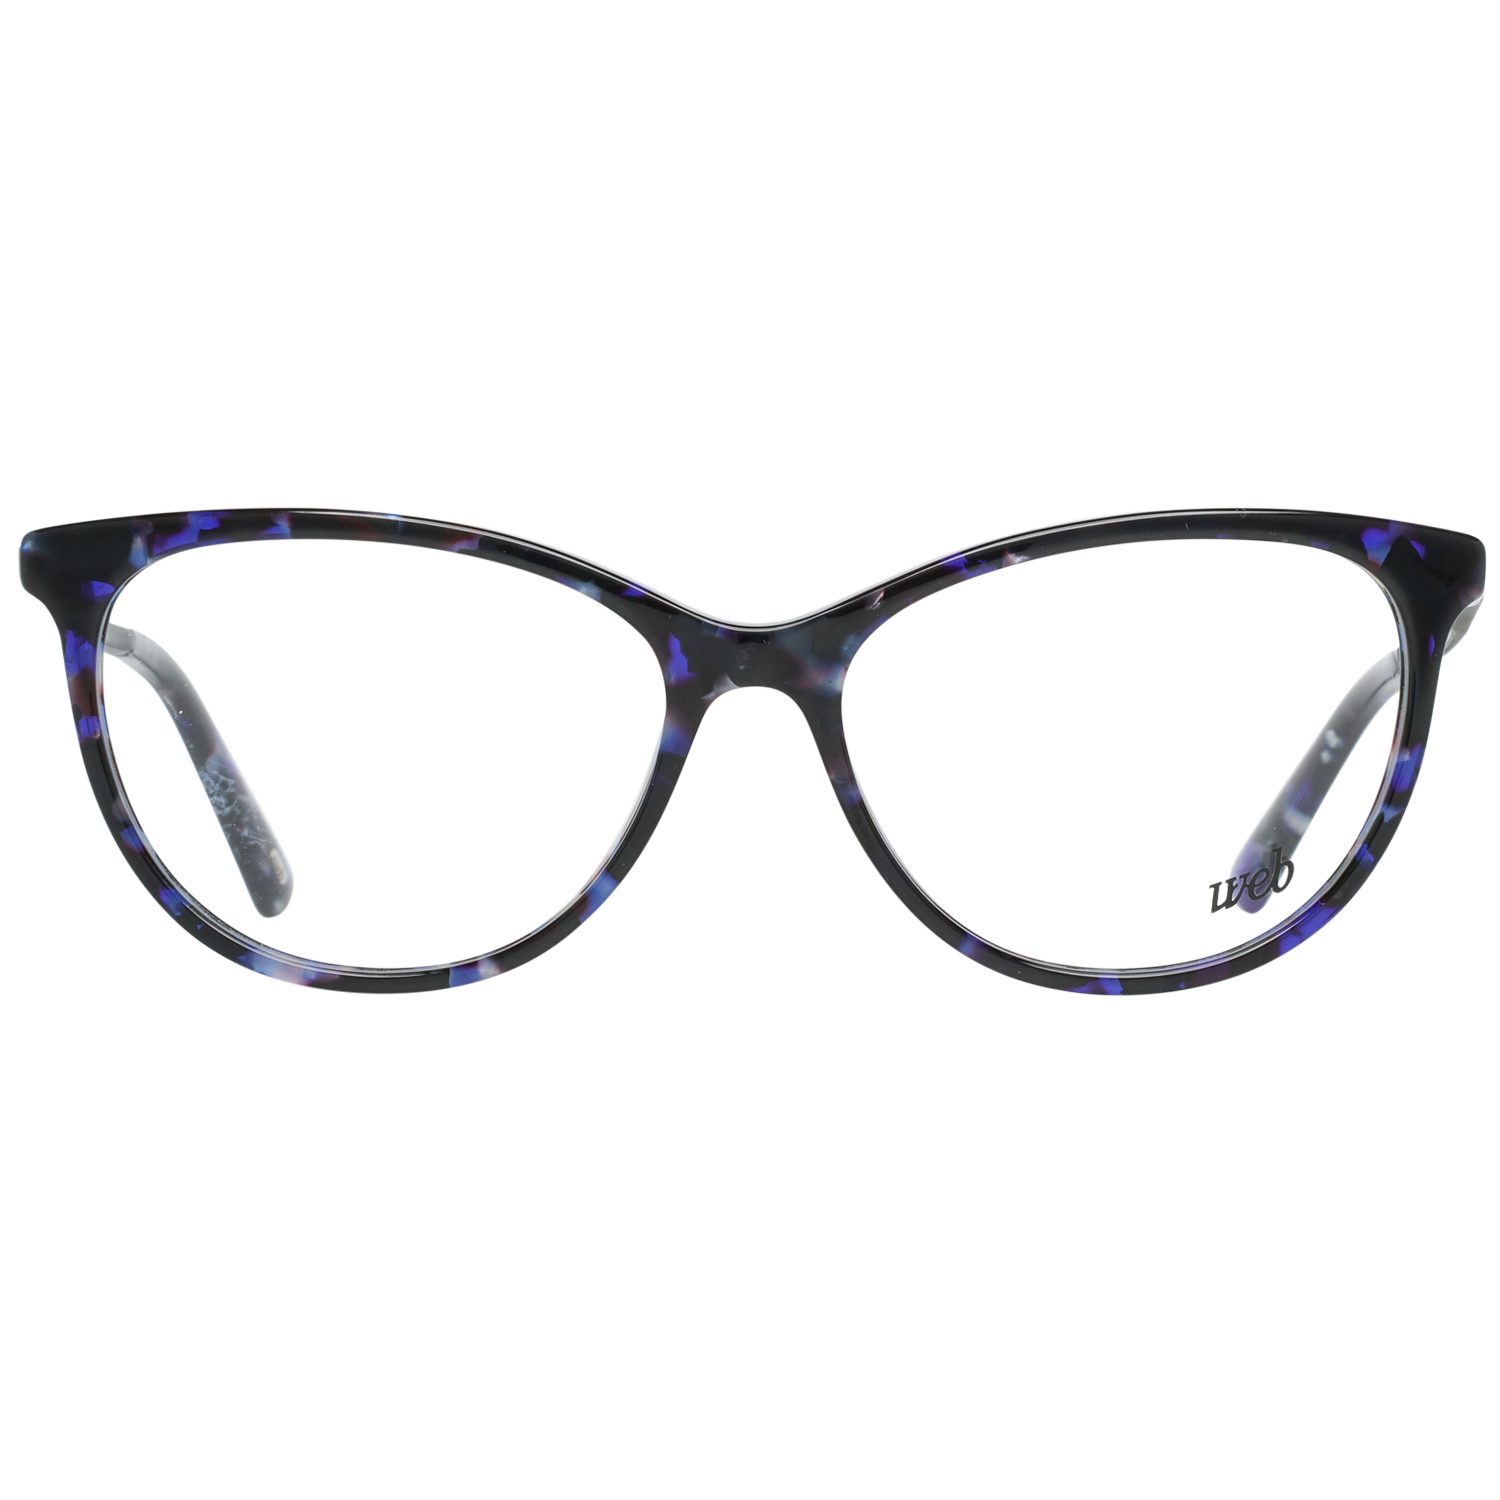 Web Frames Web Optical Frame WE5239 090 54 Eyeglasses Eyewear UK USA Australia 